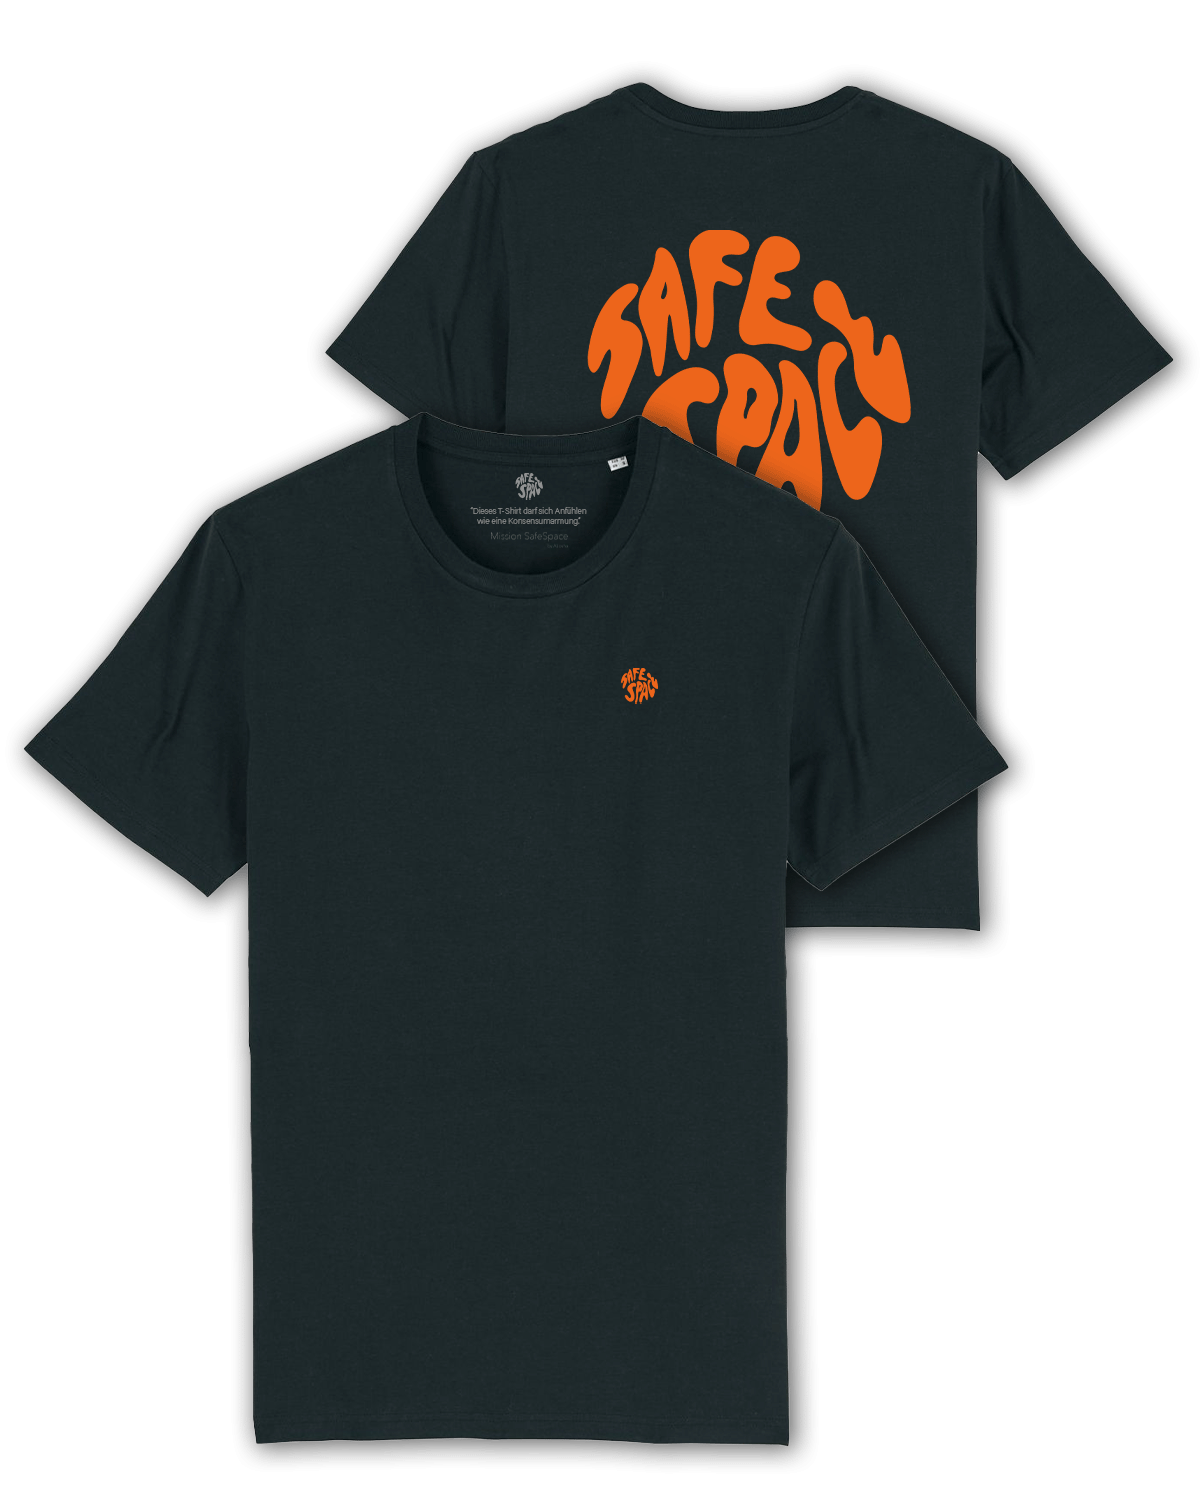 T-Shirt "Mission SafeSpace" schwarz/orange